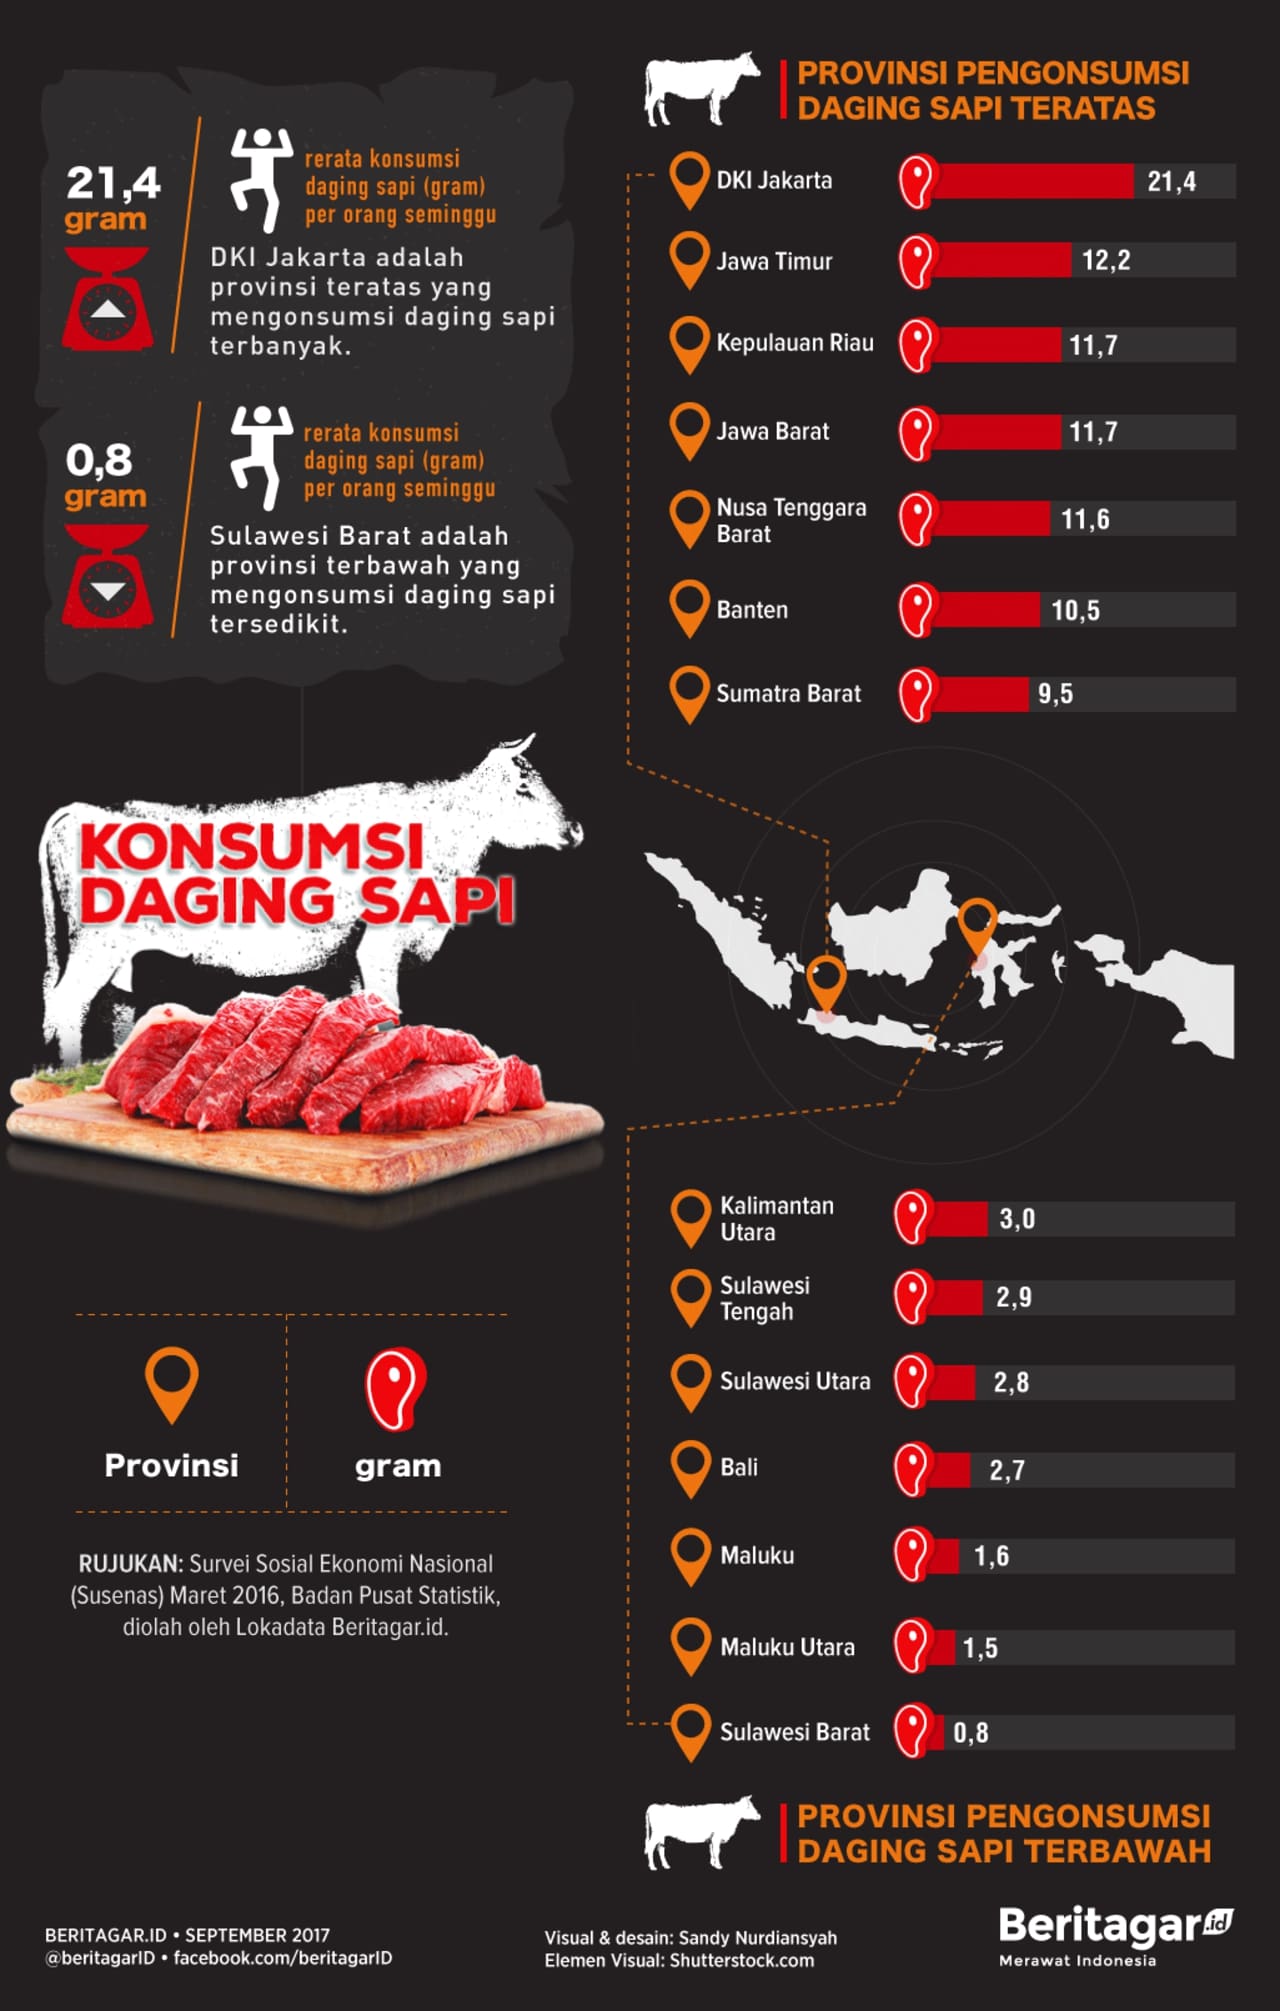 Konsumsi Daging Sapi di Indonesia - 2017 images